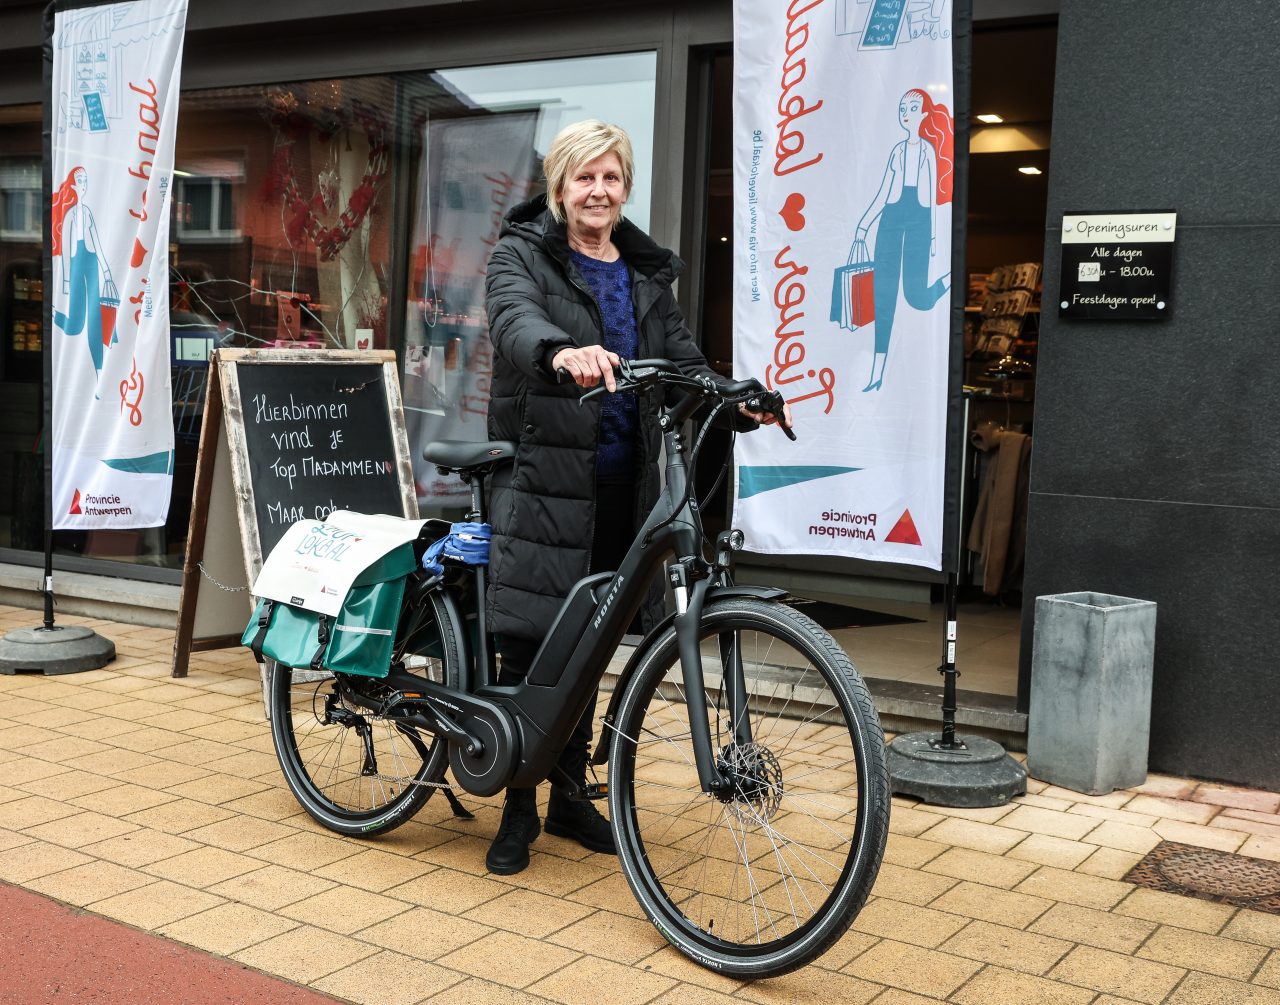 In Hulshout was Carine de gelukkige winnaar van een e-bike ©provincie Antwerpen